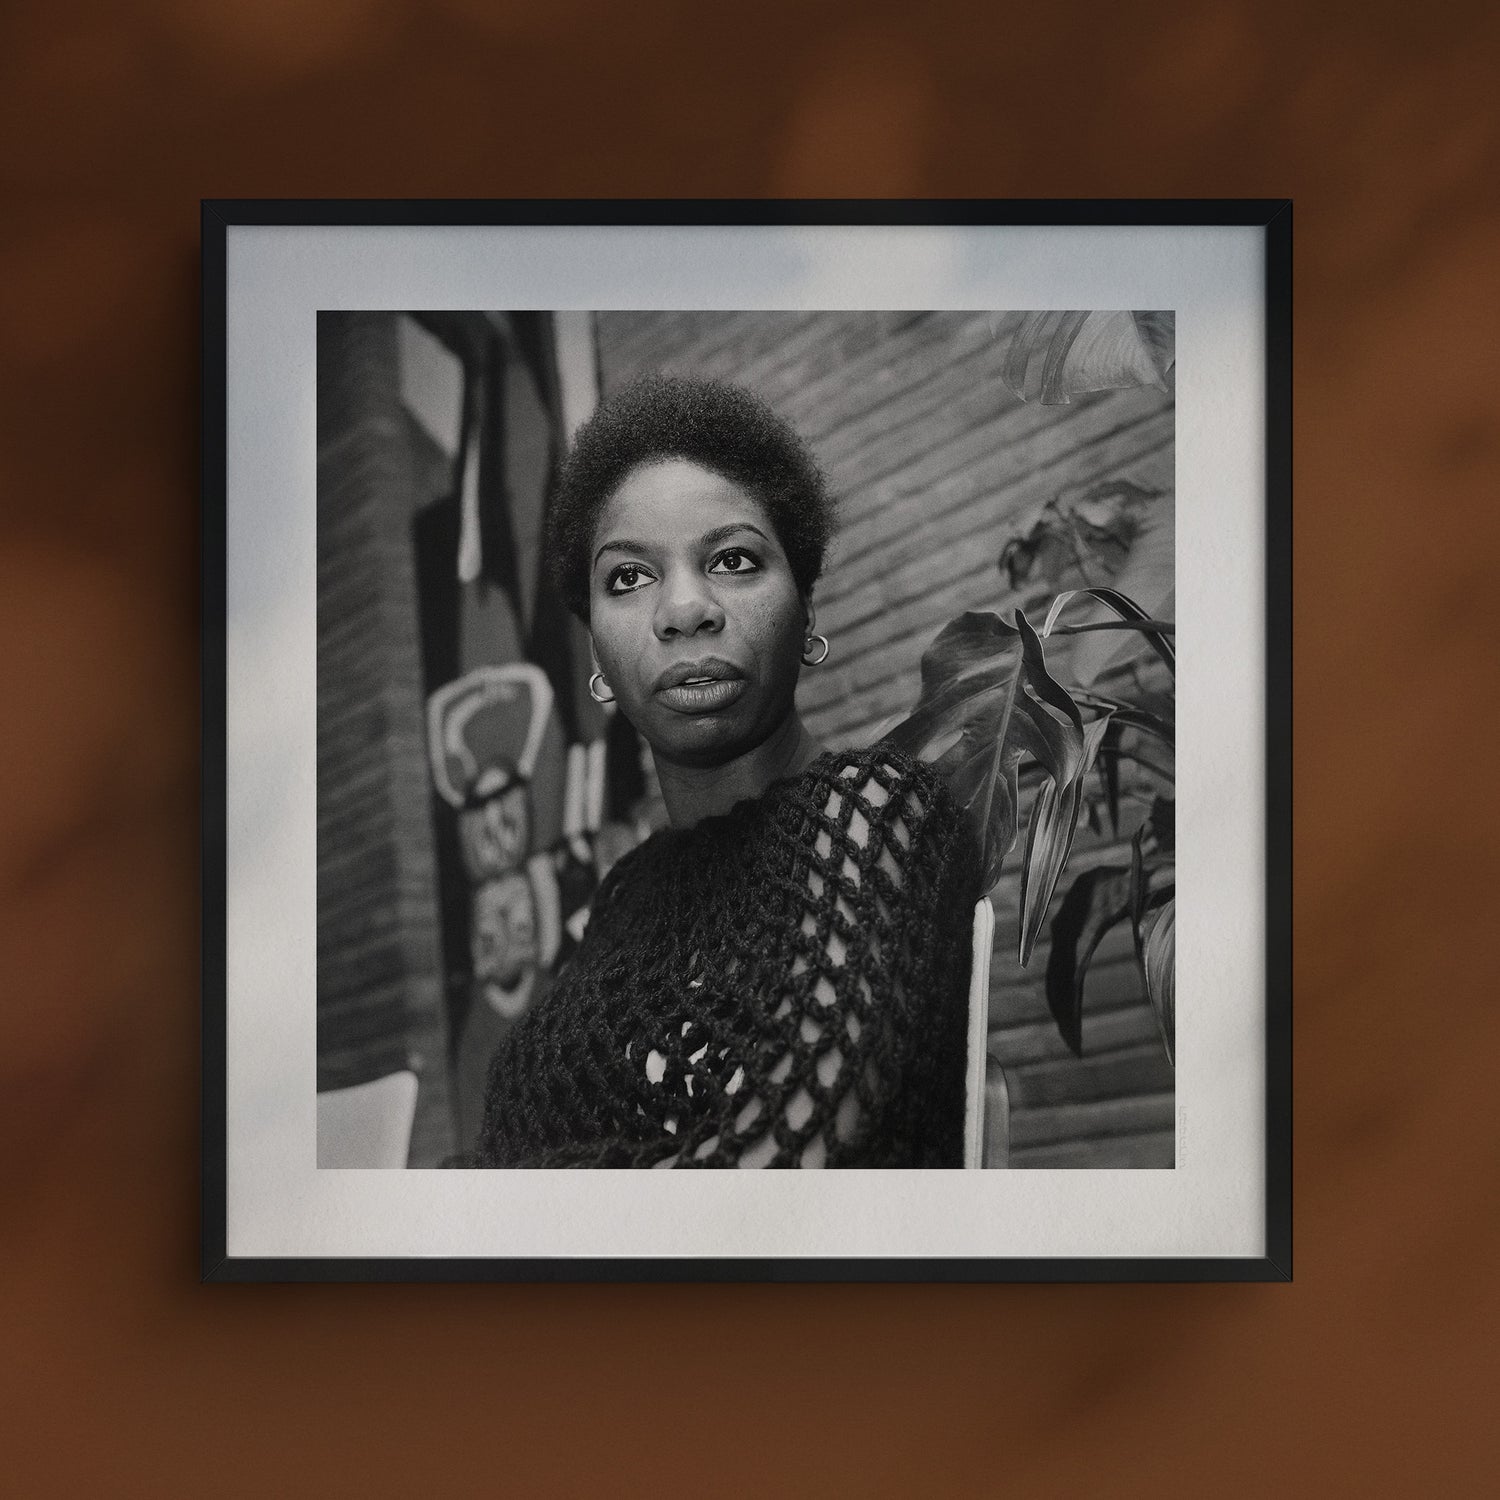 Nina Simone by Ron Kroon, 1965